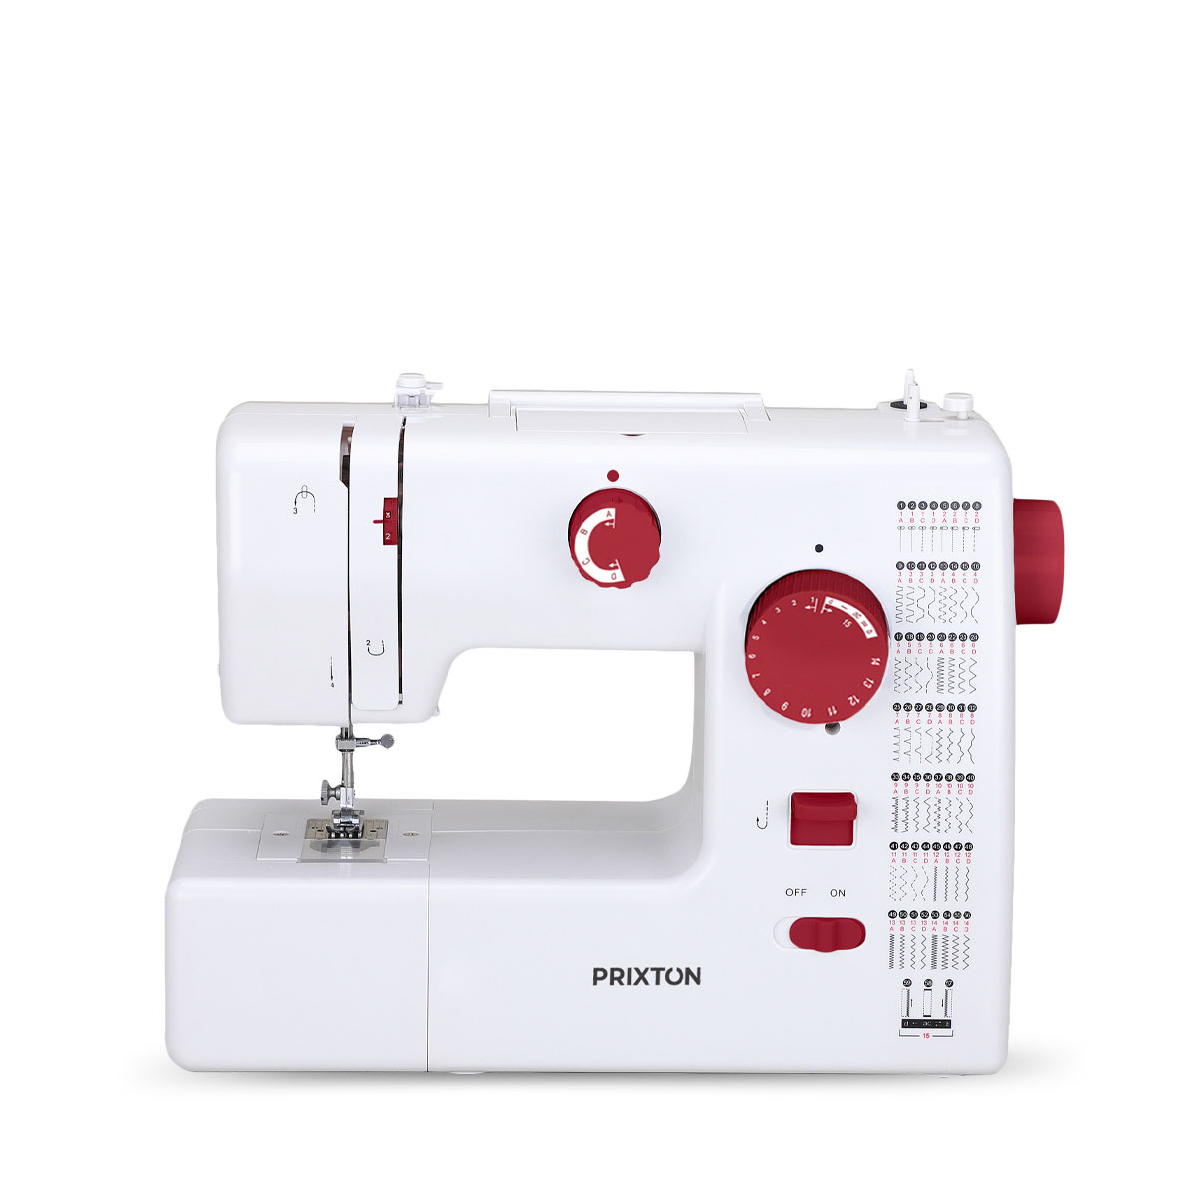 PRIXTON - Machine à coudre portable avec tiroir pour accessoires, lampe  intégrée, 12 types de points de couture différents, comprend une pédale